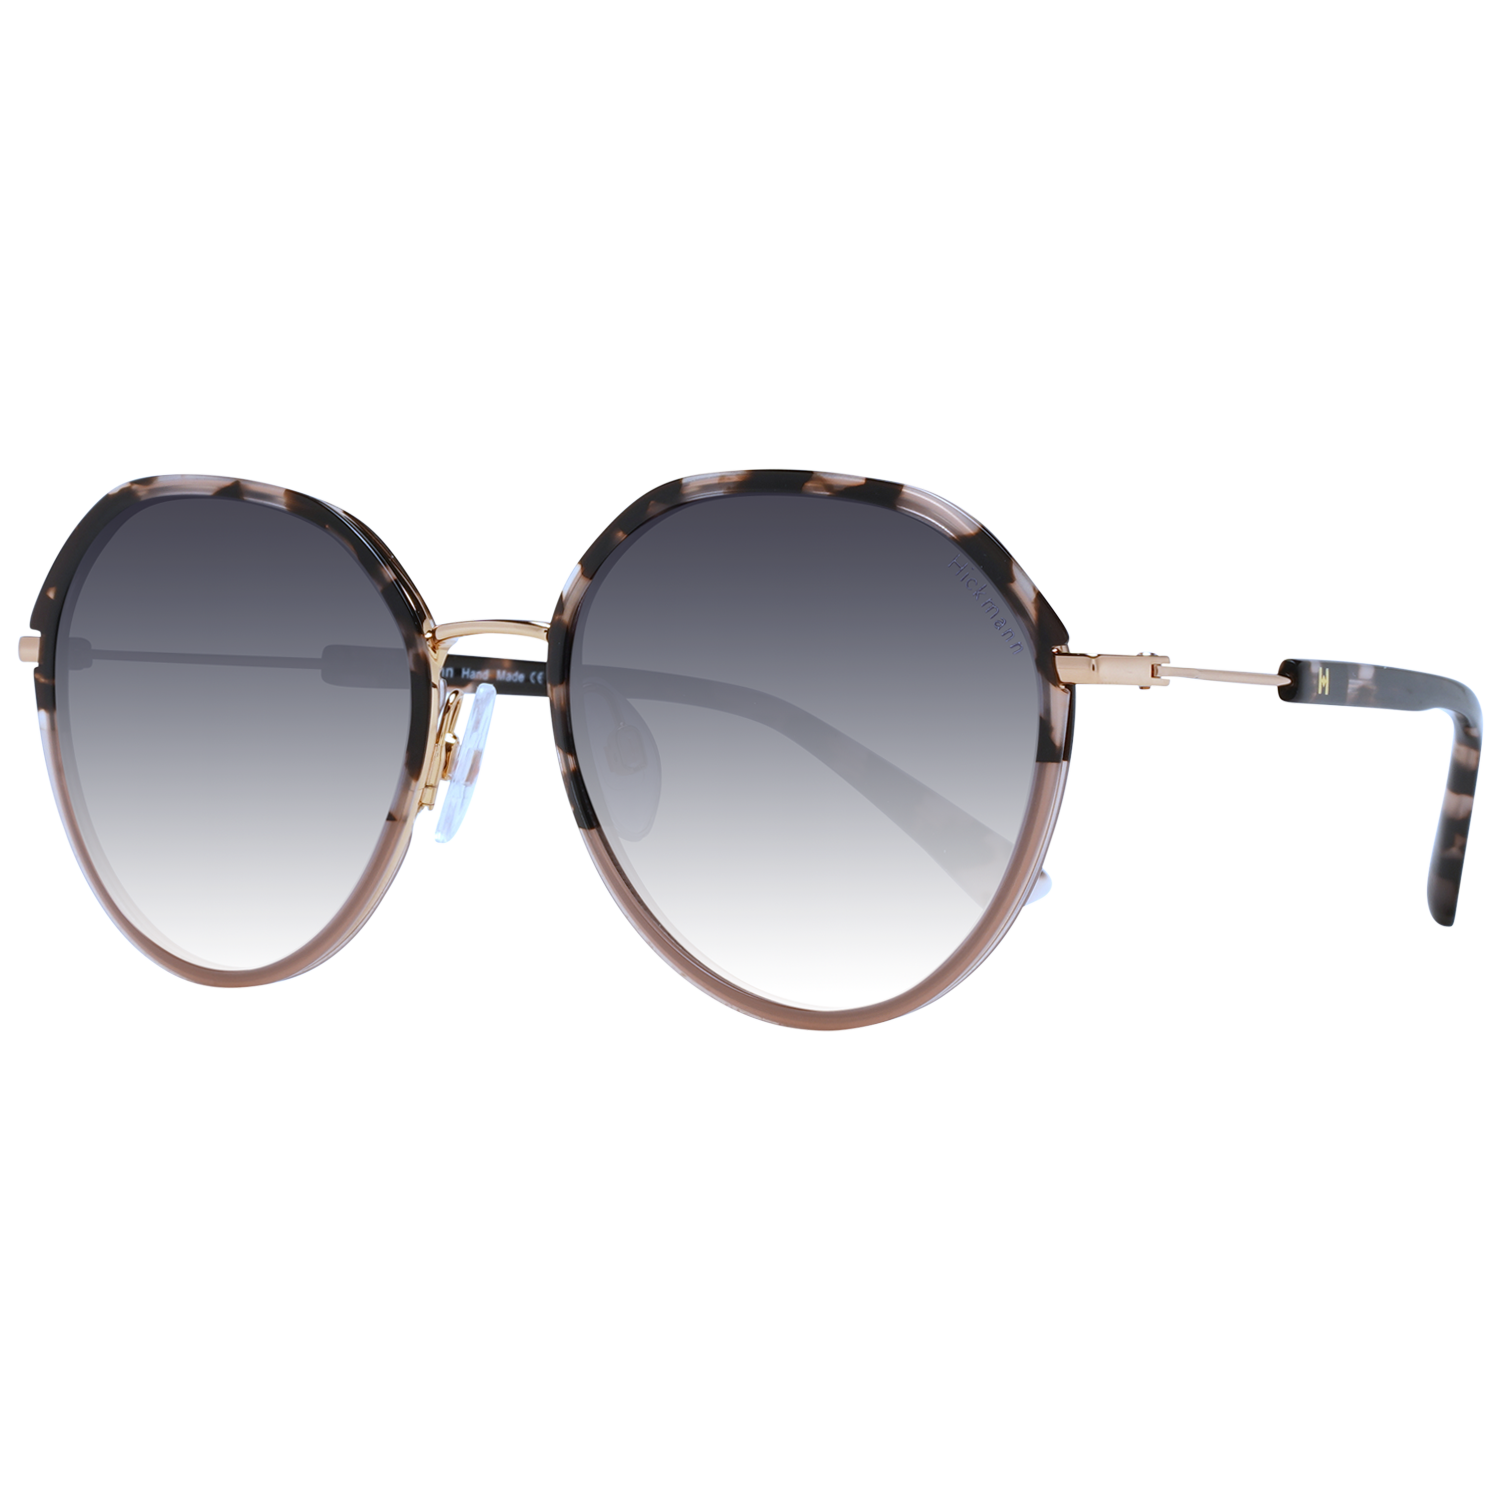 Dámské sluneční brýle Ana Hickmann HI3159 C01 54